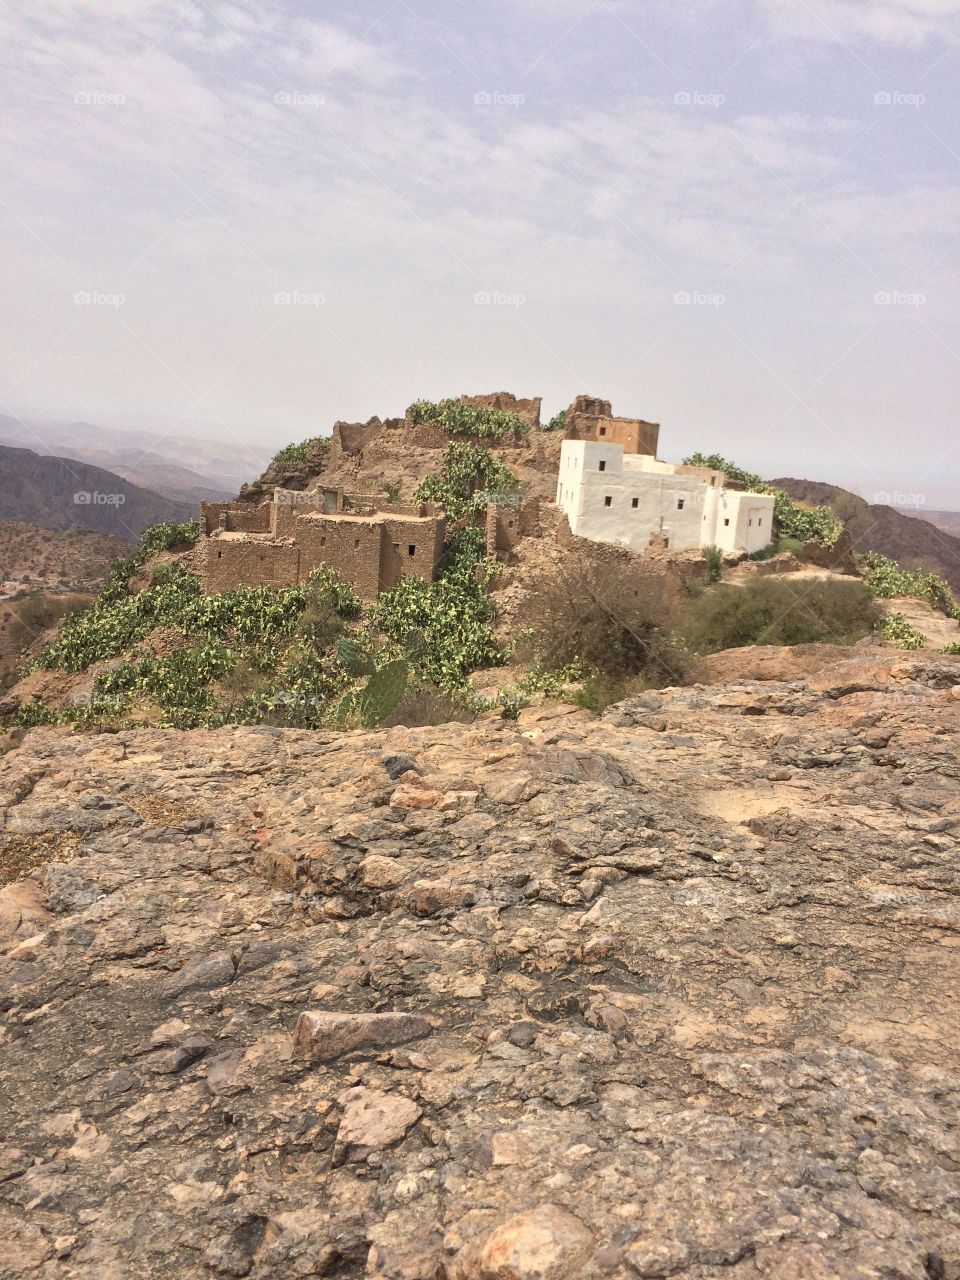 Tamazight 